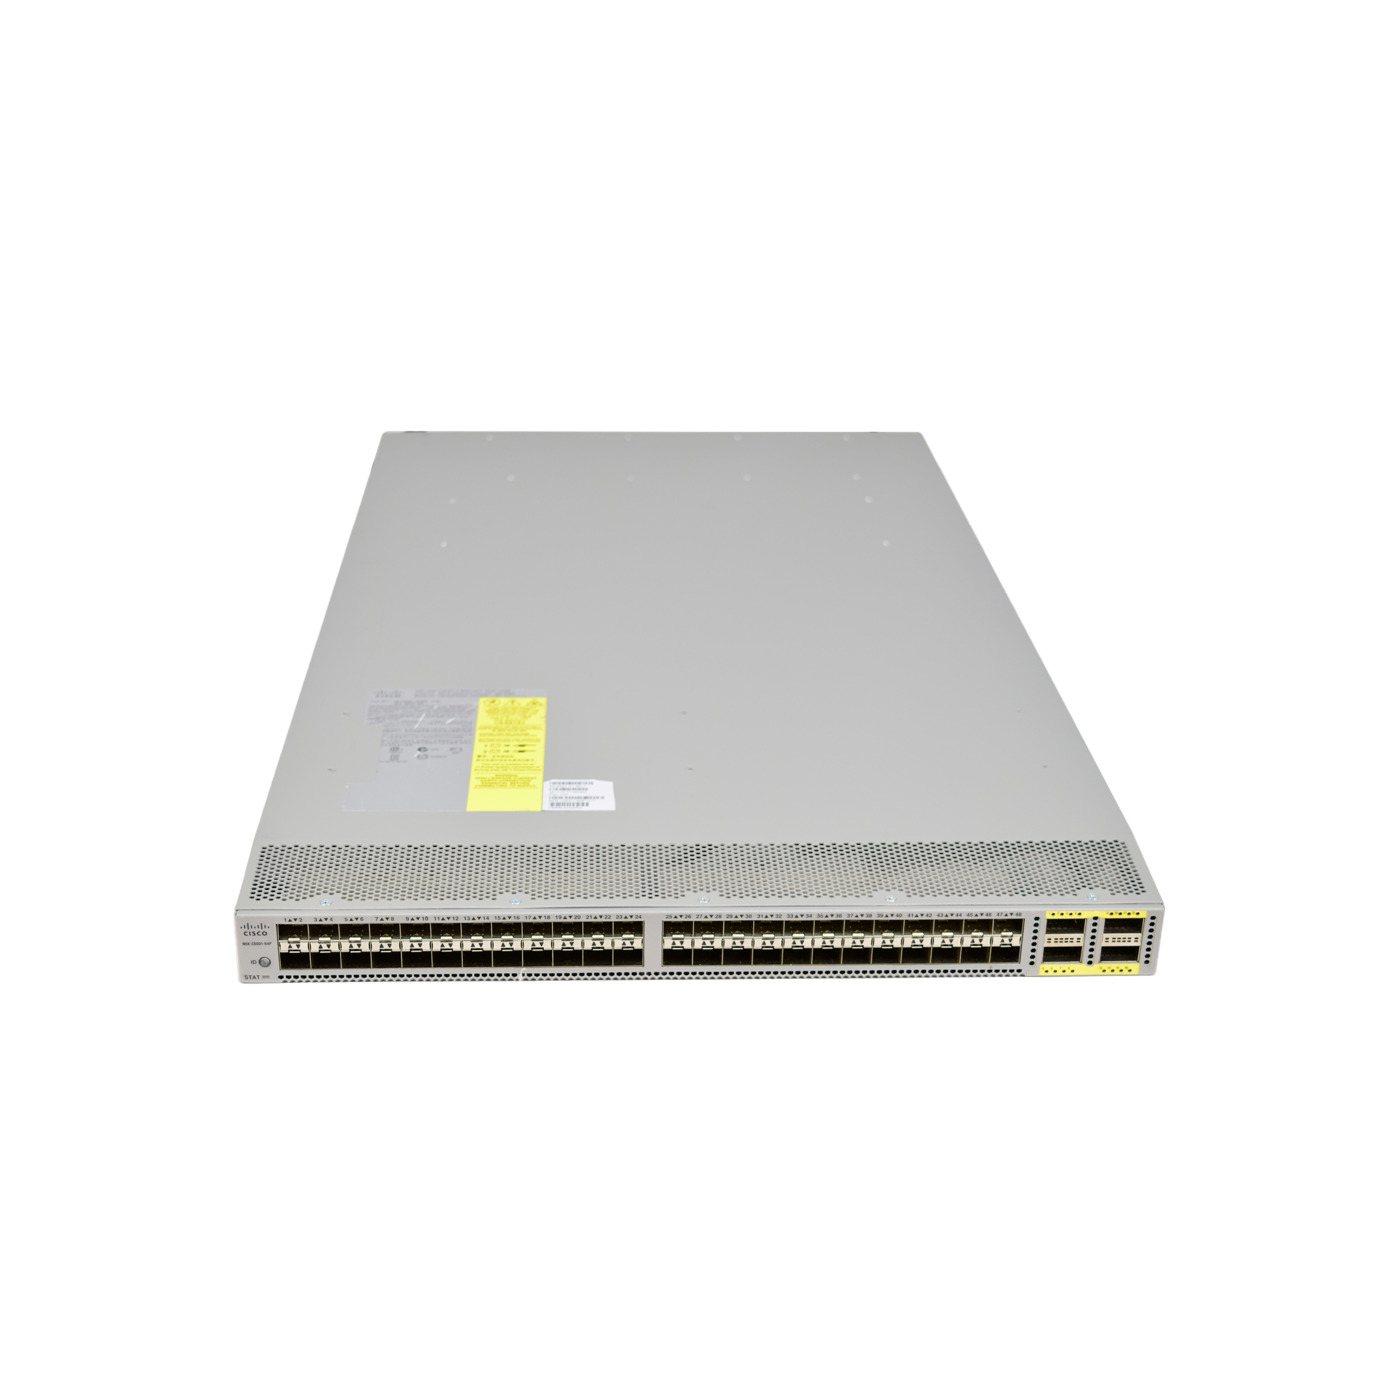 New Cisco N6K-C6001-64P 48-Port 10G SFP+ w/ 4x QSFP Nexus 6001 1 RU Switch HSS